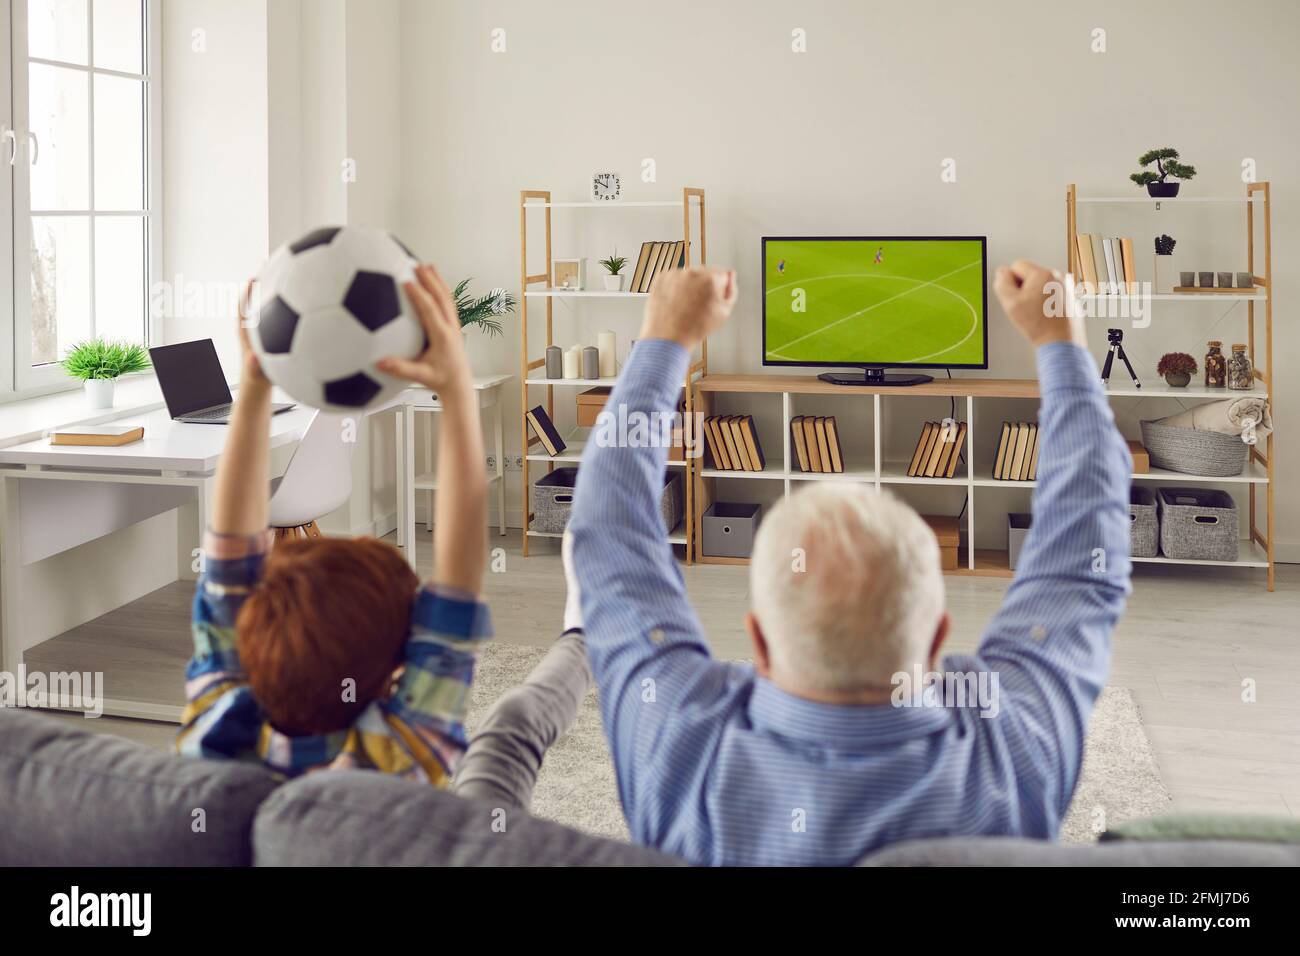 Grand-père et petit-fils assis sur un canapé, regardant le football et soutenant l'équipe favorite Banque D'Images